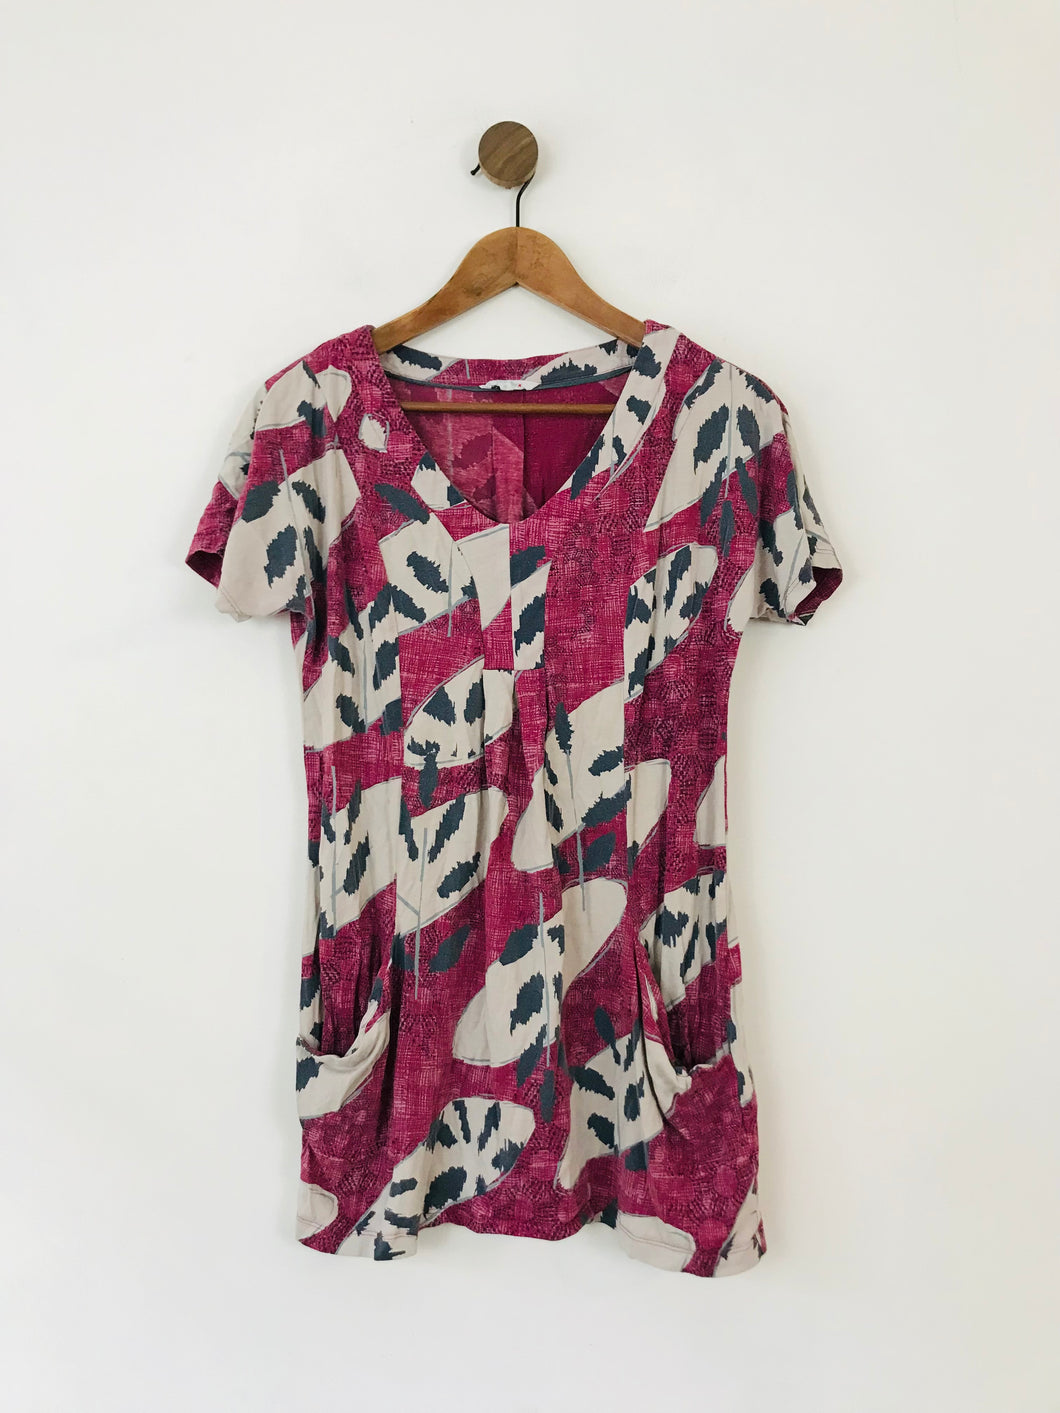 White Stuff Women's Long Patterned T-Shirt | UK12 | Pink